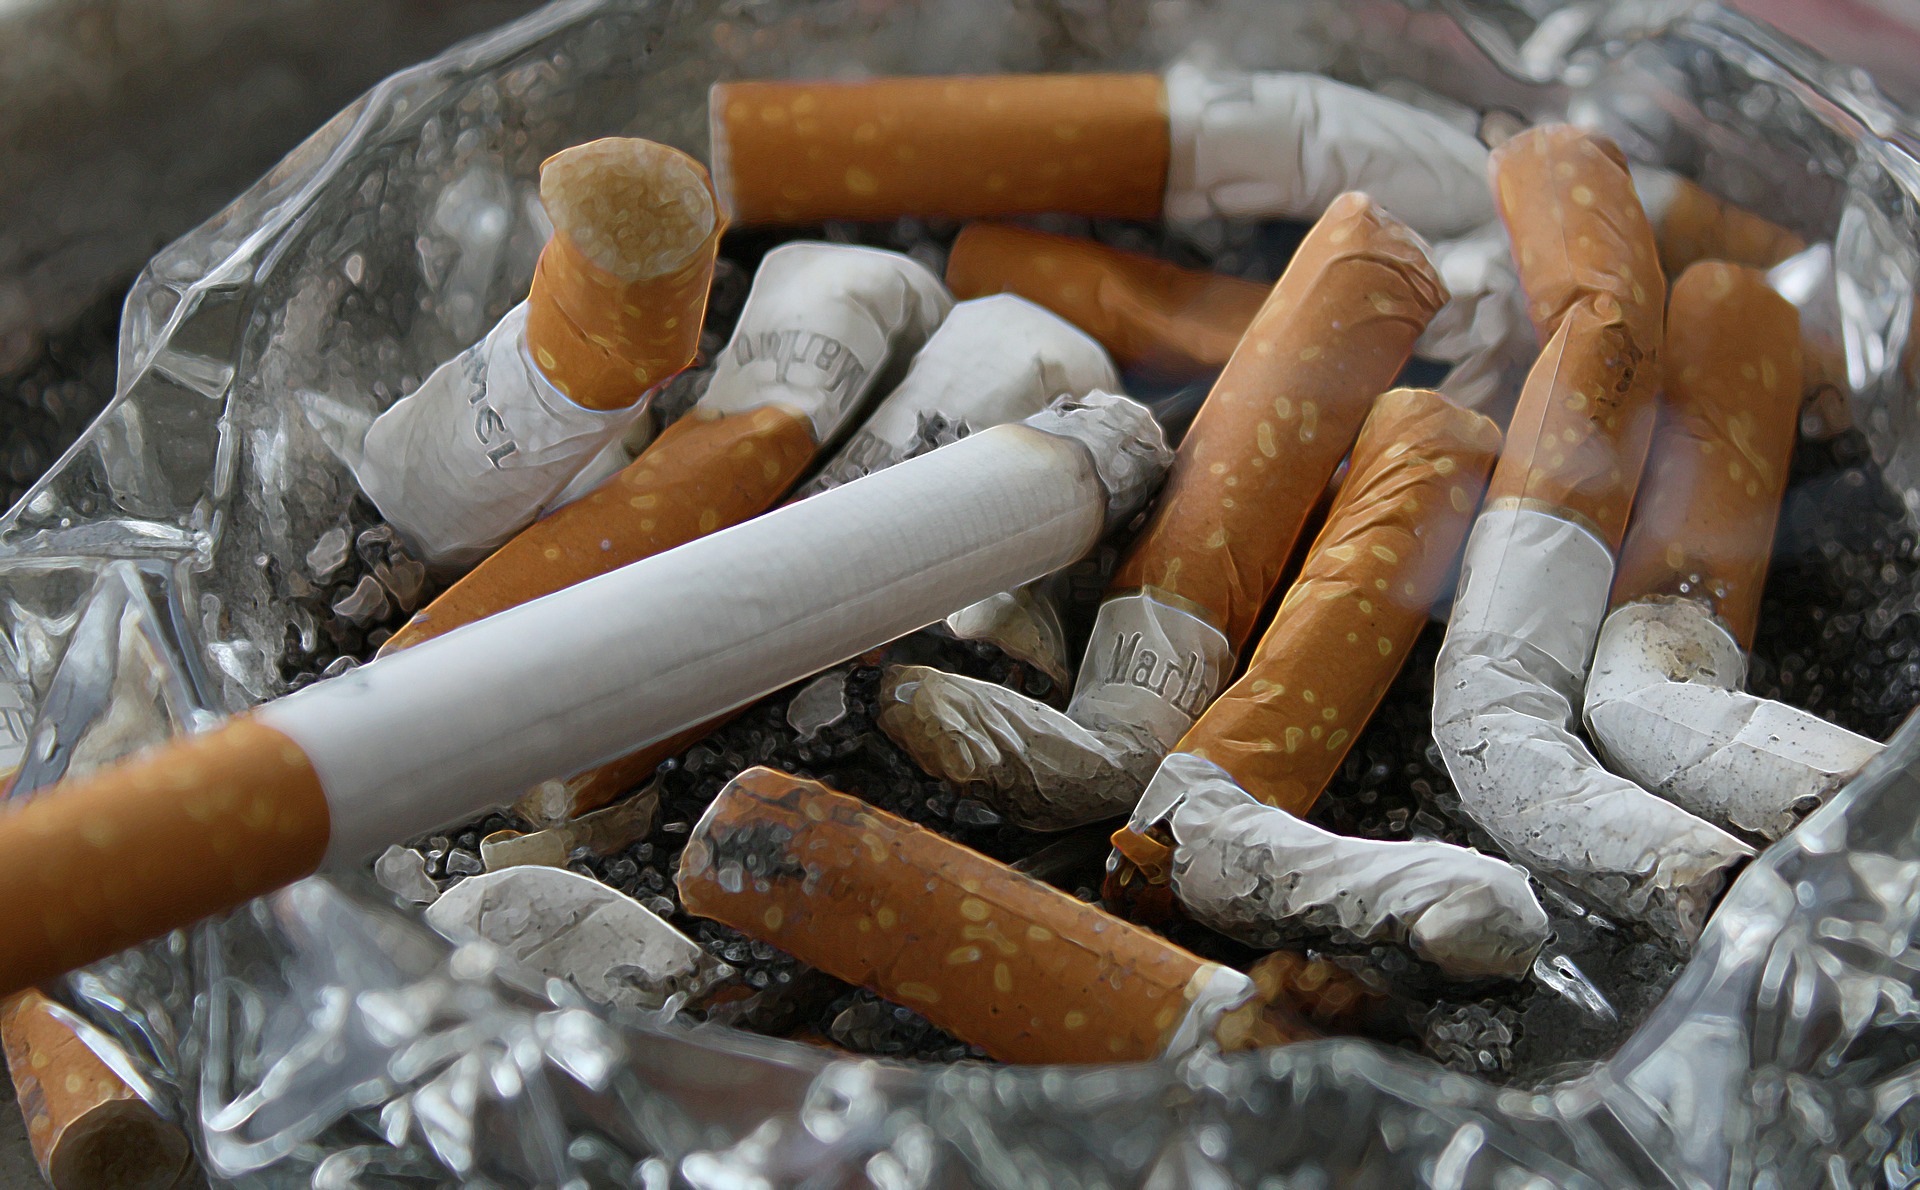 Na imagem há vários cigarros apagados dentro de um cinzeiro cristalino. Os cigarros são brancos com metade marrom. Dentro do cinzeiro há cinzas dos cigarros.